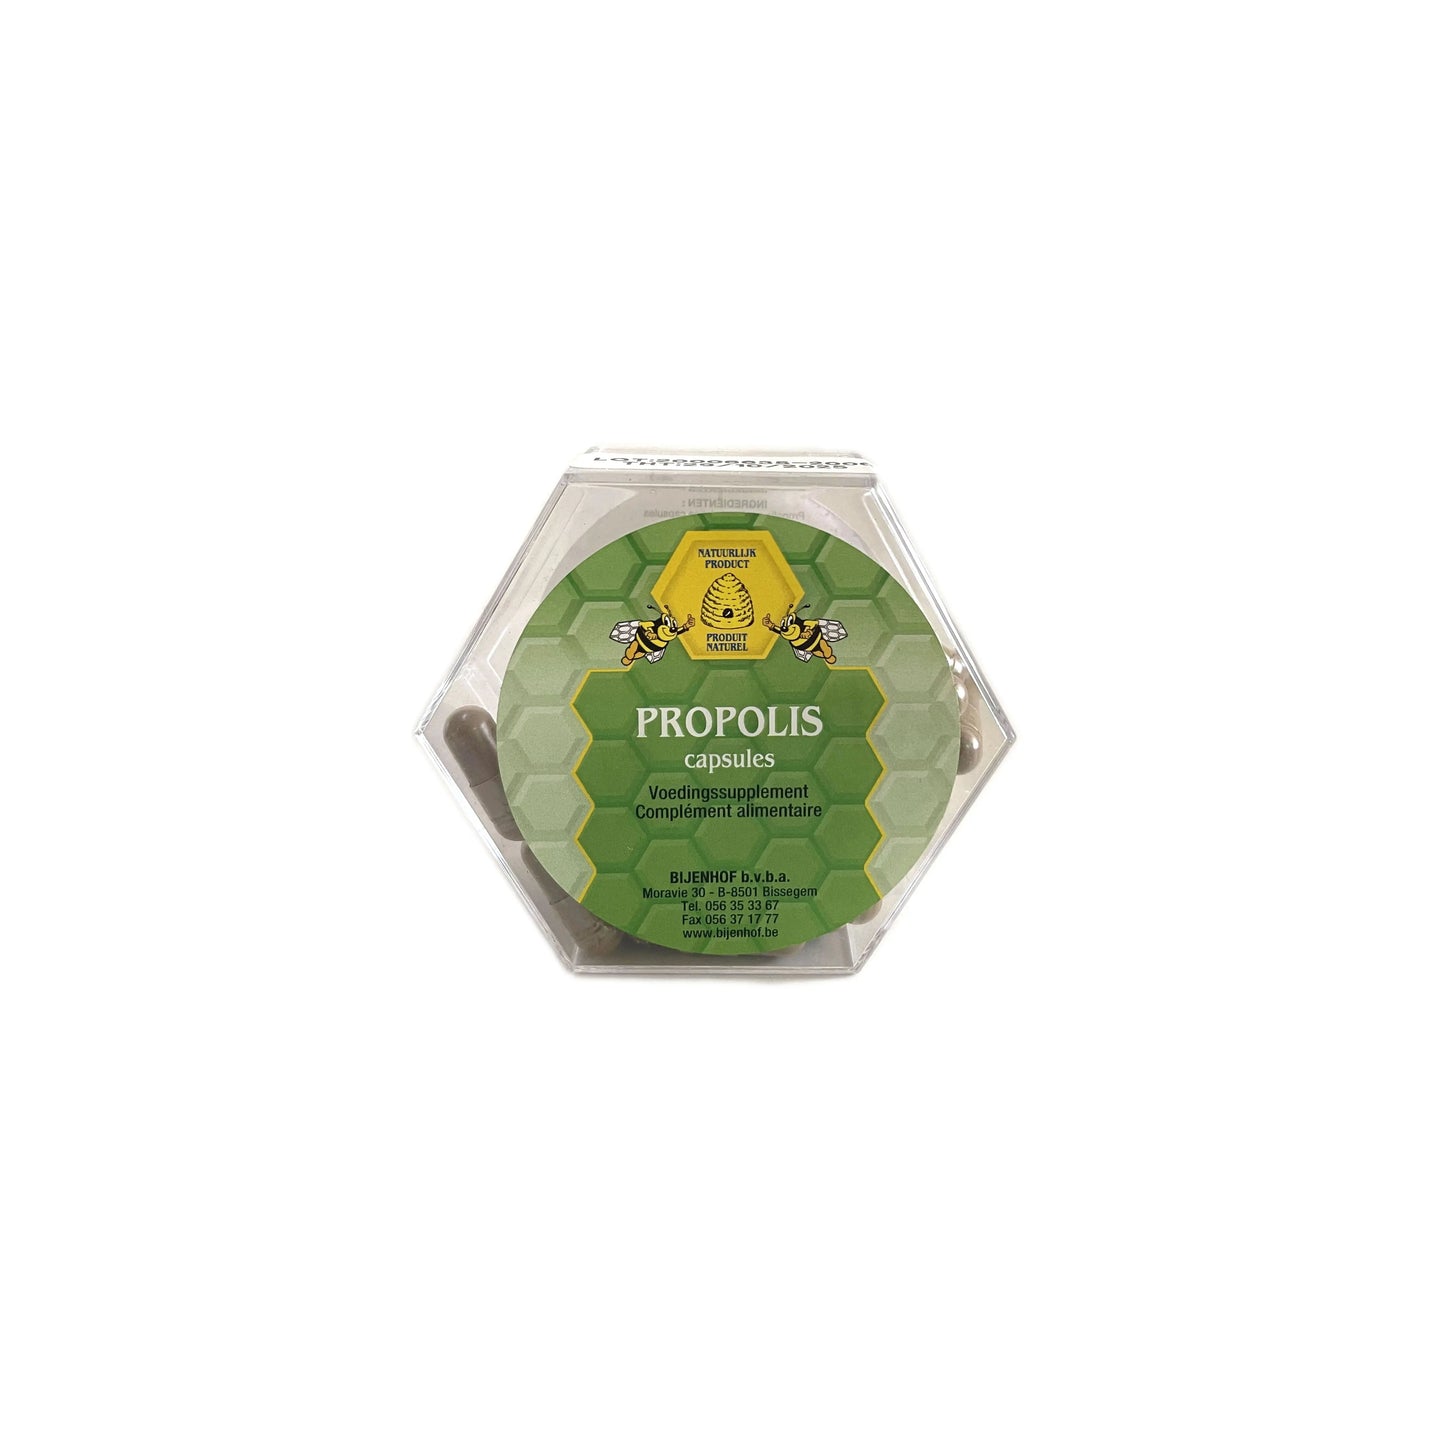 Propolis capsules 60 stuks Bijenhof - Honingwinkel